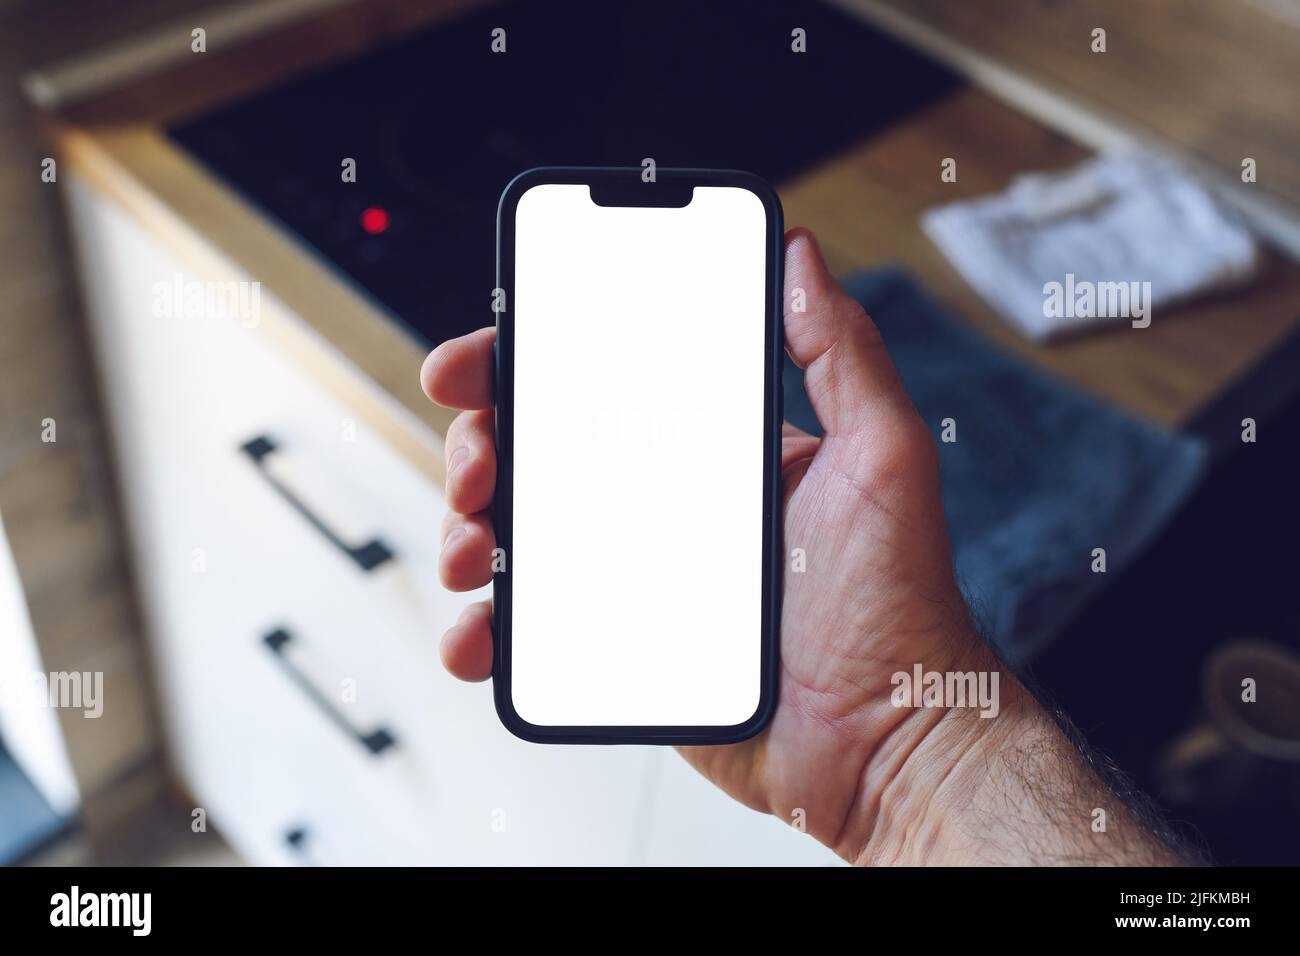 Domotique et concept d'Internet des objets, main d'homme tenant un smartphone avec écran maquette vierge devant le comptoir de la cuisine, mise au point sélective Banque D'Images